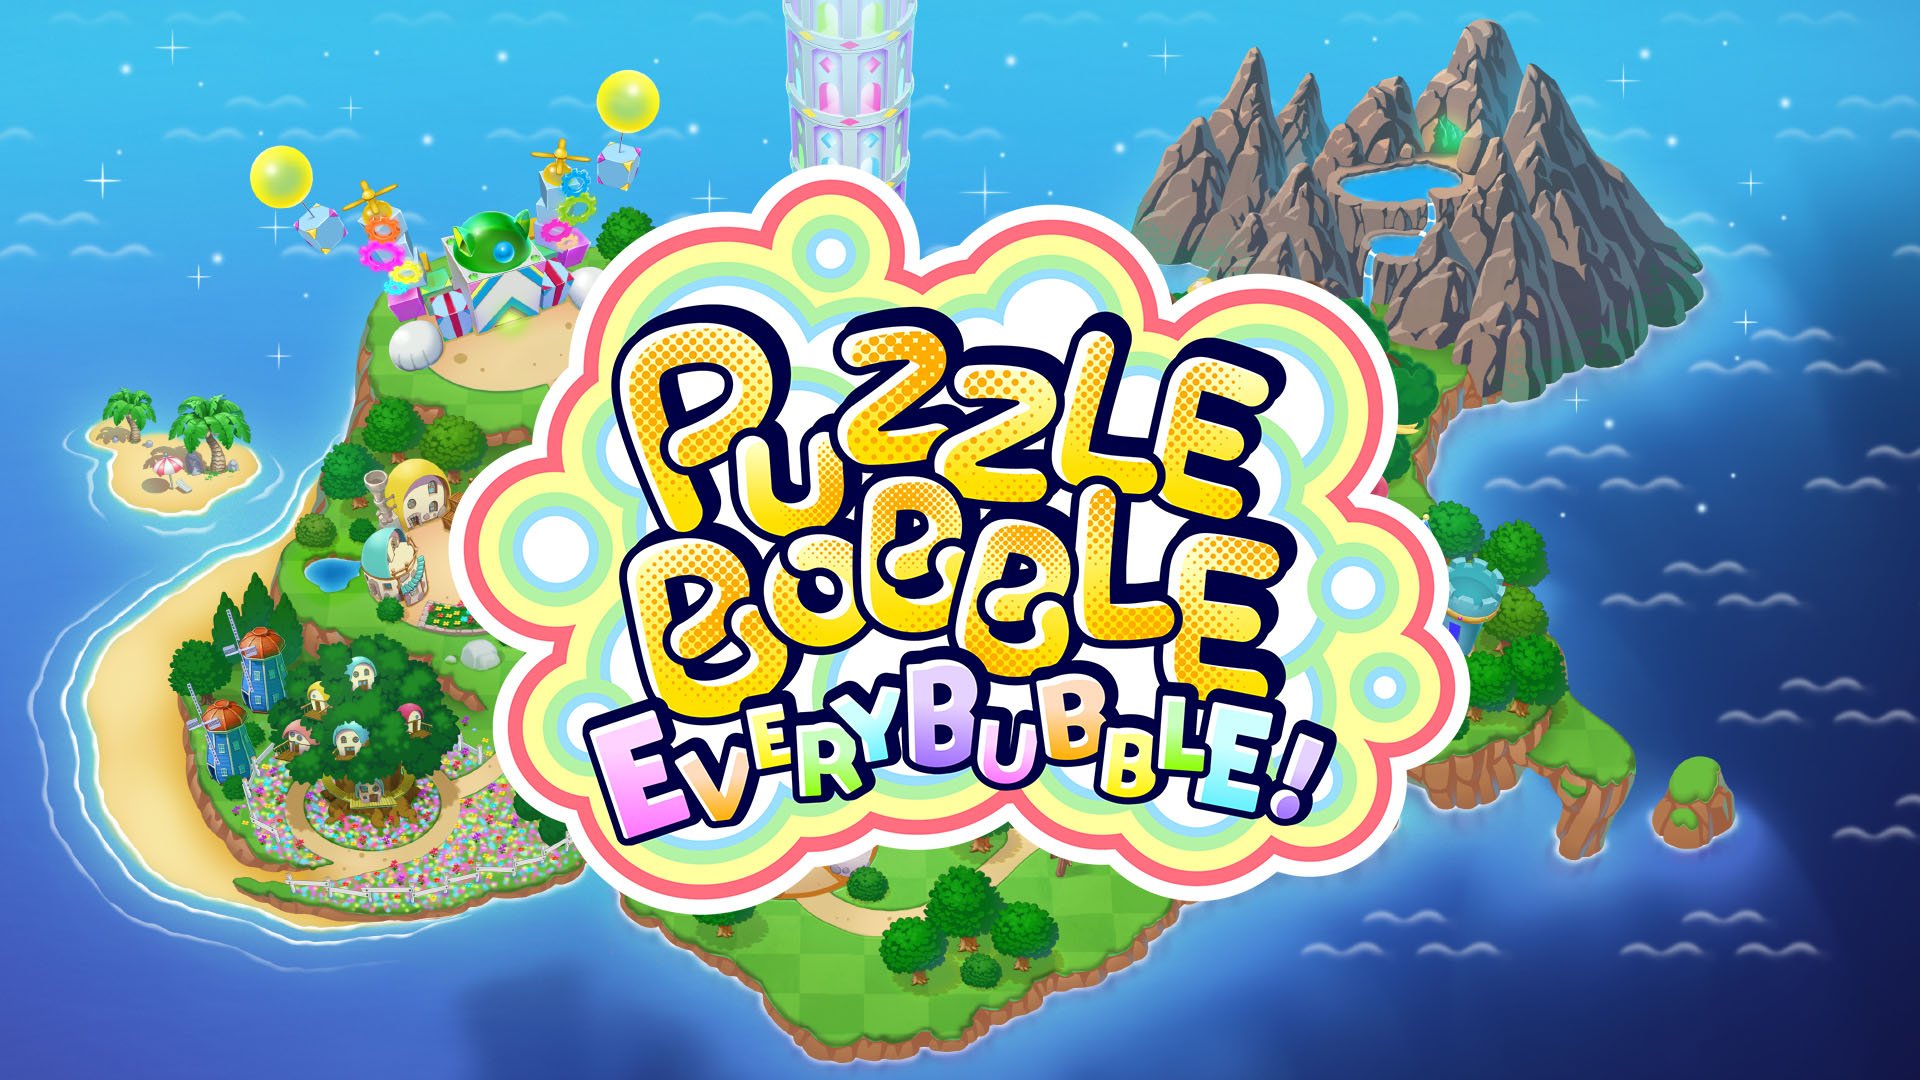 Puzzle Bobble Everybubble! será lançado durante o outono